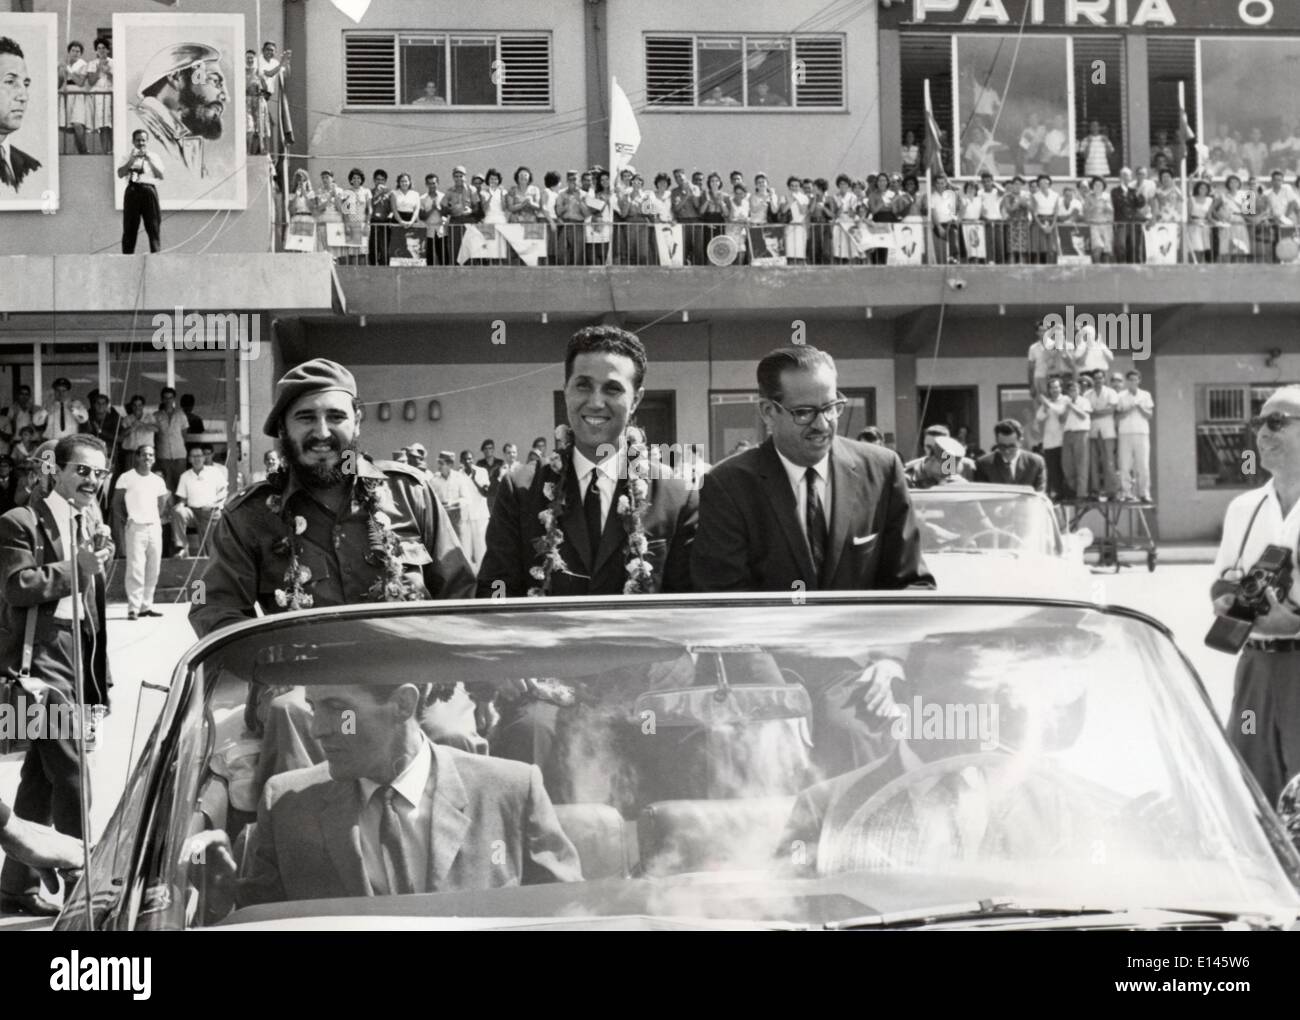 Fichier - Ahmed Ben Bella, (décembre 25, 1918 - Avril 11, 2012) qui a été un membre clé de la révolution algérienne et devint le premier président de l'Algérie en 1962, est décédé mercredi à l'âge de 96 ans, l'agence de presse APS locales signalées. PHOTO : 23 octobre, 1962 - La Havane, Cuba - leader révolutionnaire cubain qui a mené son pays à partir de janvier 1959 jusqu'à sa retraite en février 2008, Fidel Castro a transformé Cuba dans le premier État communiste du monde occidental. Sur la photo : le président algérien Ahmed Ben Bella (centre) lors d'une visite à Cuba, à côté de CASTRO (à gauche) et le président cubain OSVALDO DORTICOS. Banque D'Images